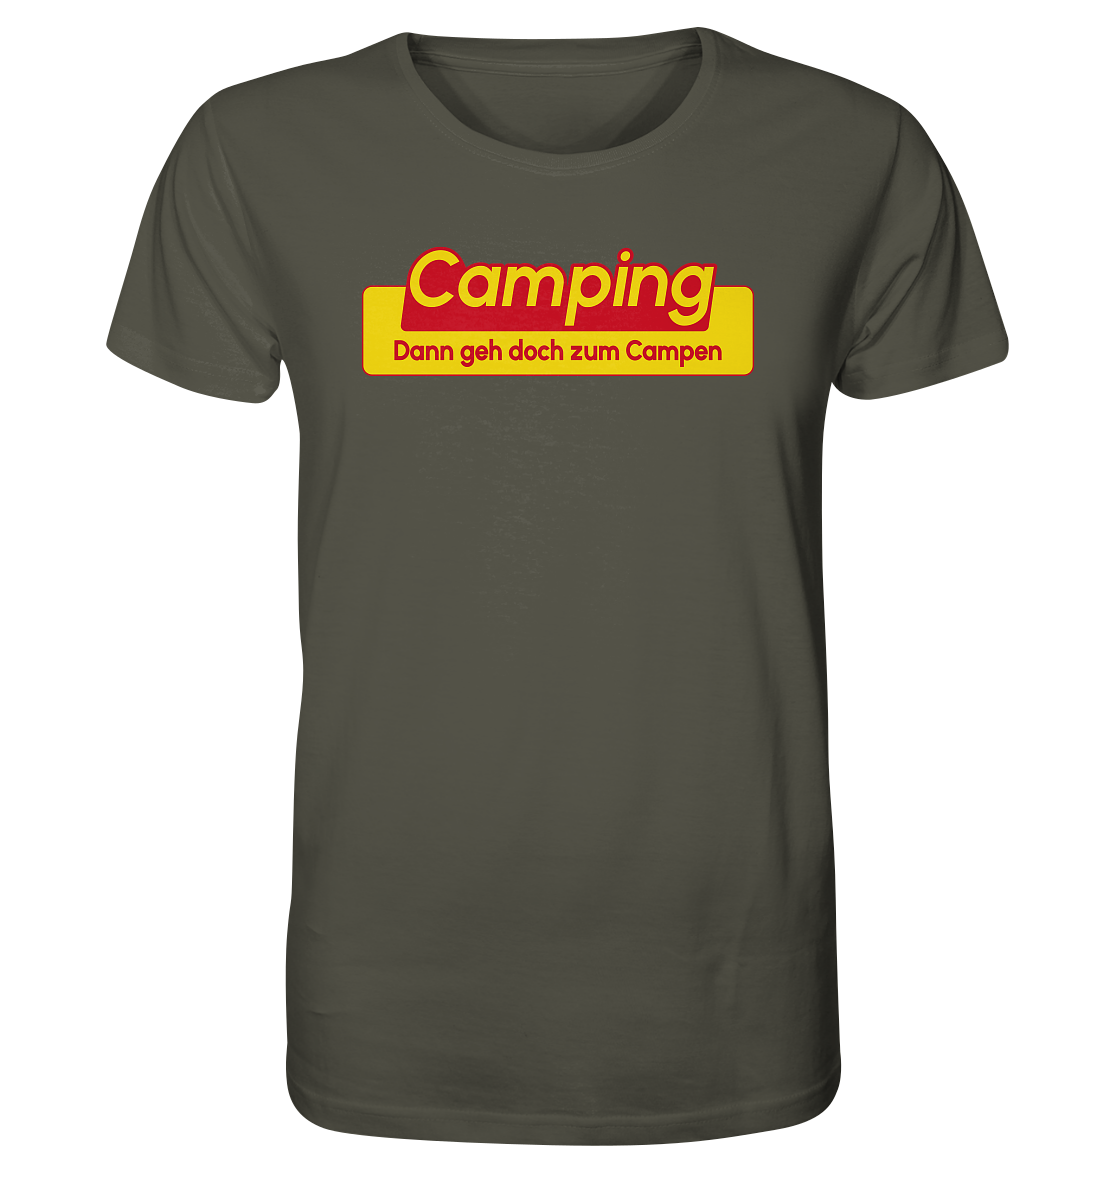 Dann geh doch zum Campen! - Organic Shirt